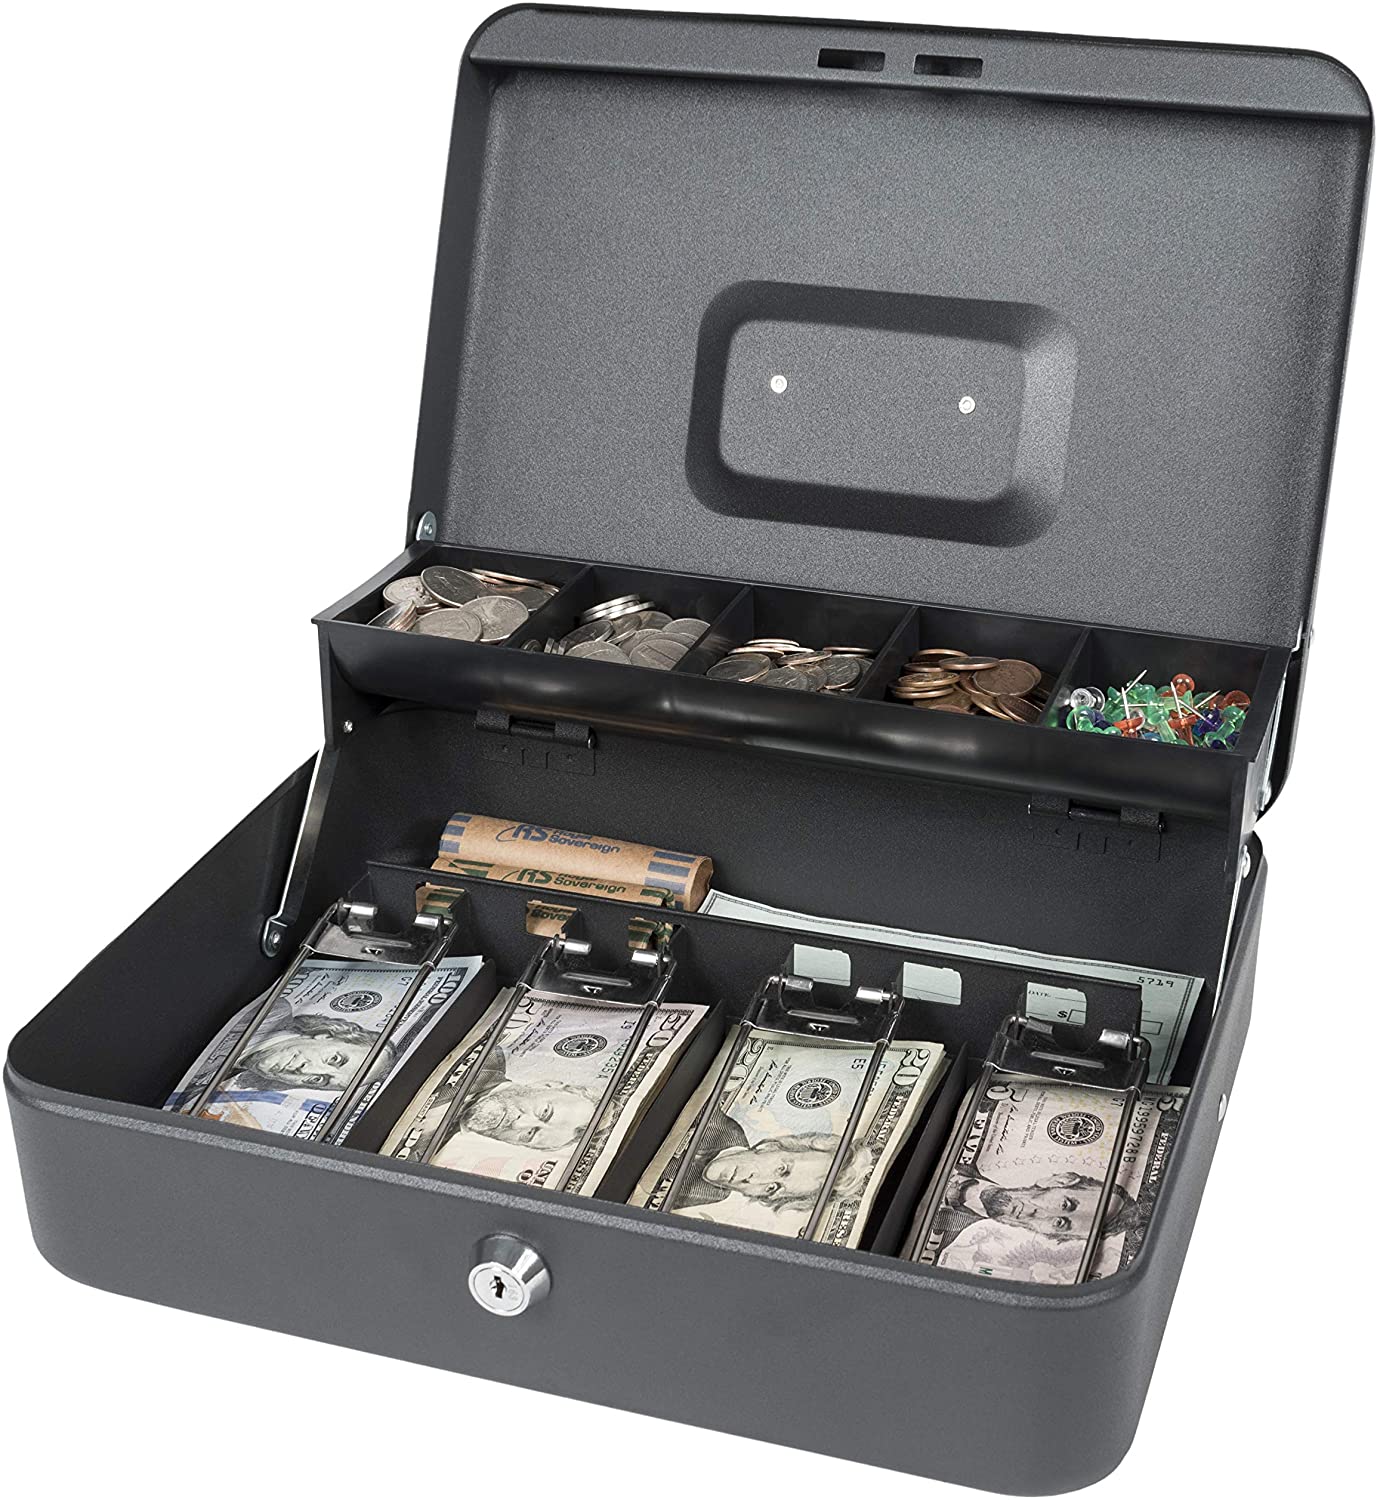  Caja tamaño bolsillo de metal para juegos de azar, casino, caja  de dinero en efectivo para apostadores que detiene el adictivo impulso de  volver a apostar todas tus ganancias; los mejores